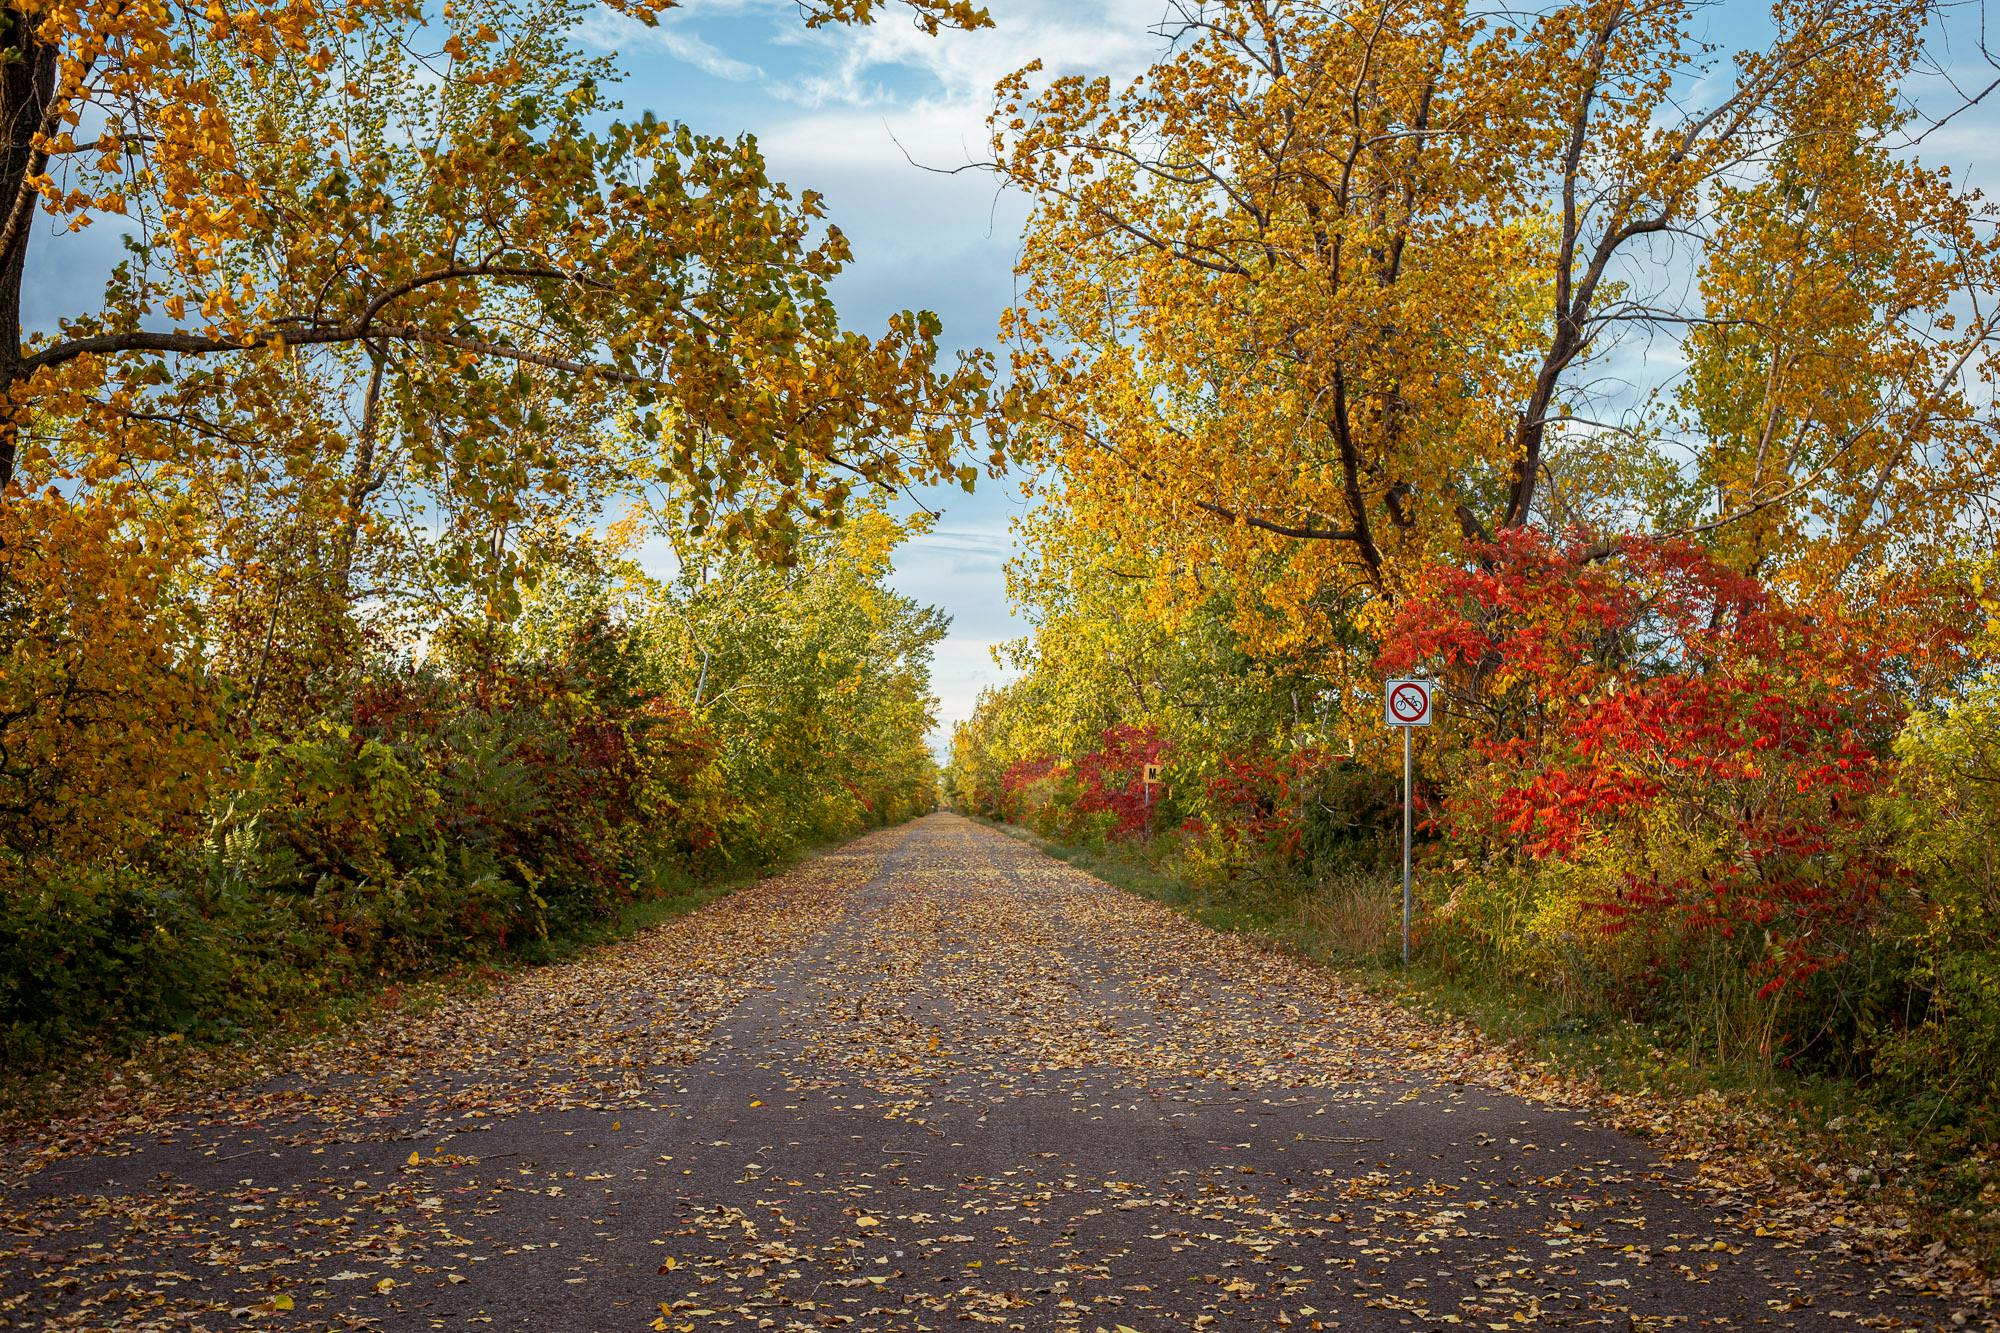 gravel road in fall